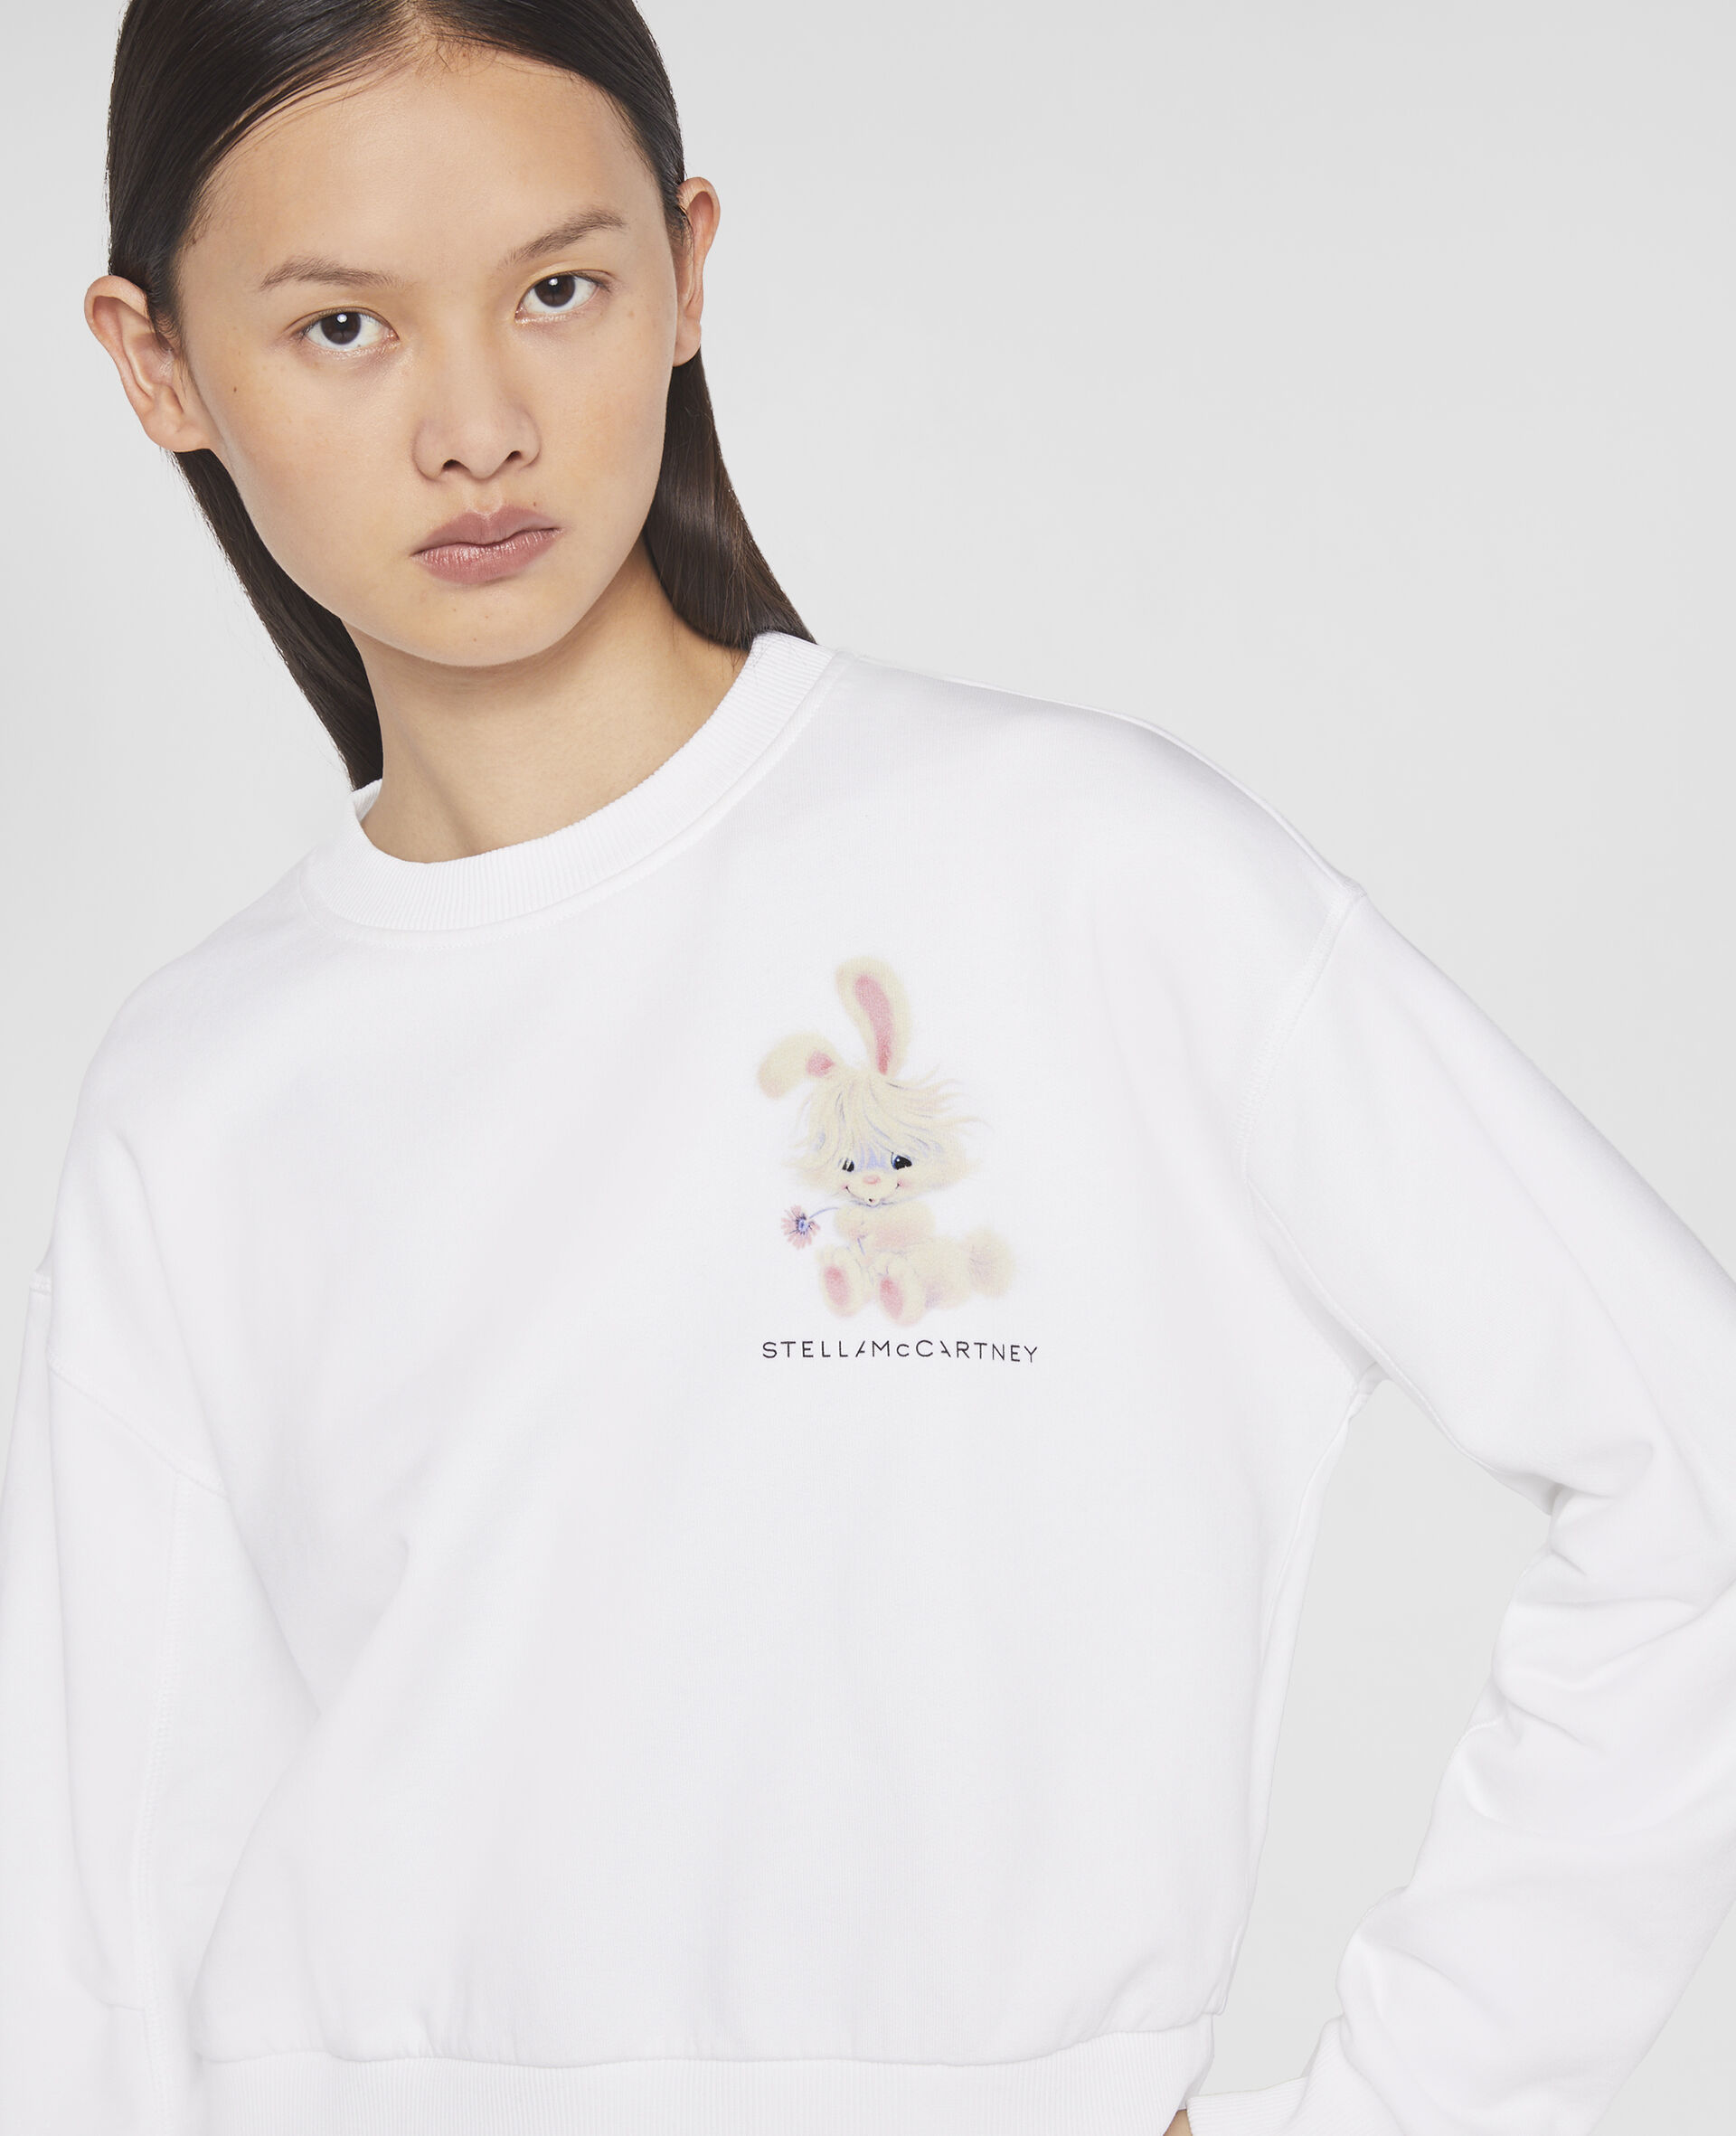 Lunar New Year Rabbit Motif Sweatshirt-White-large image number 3